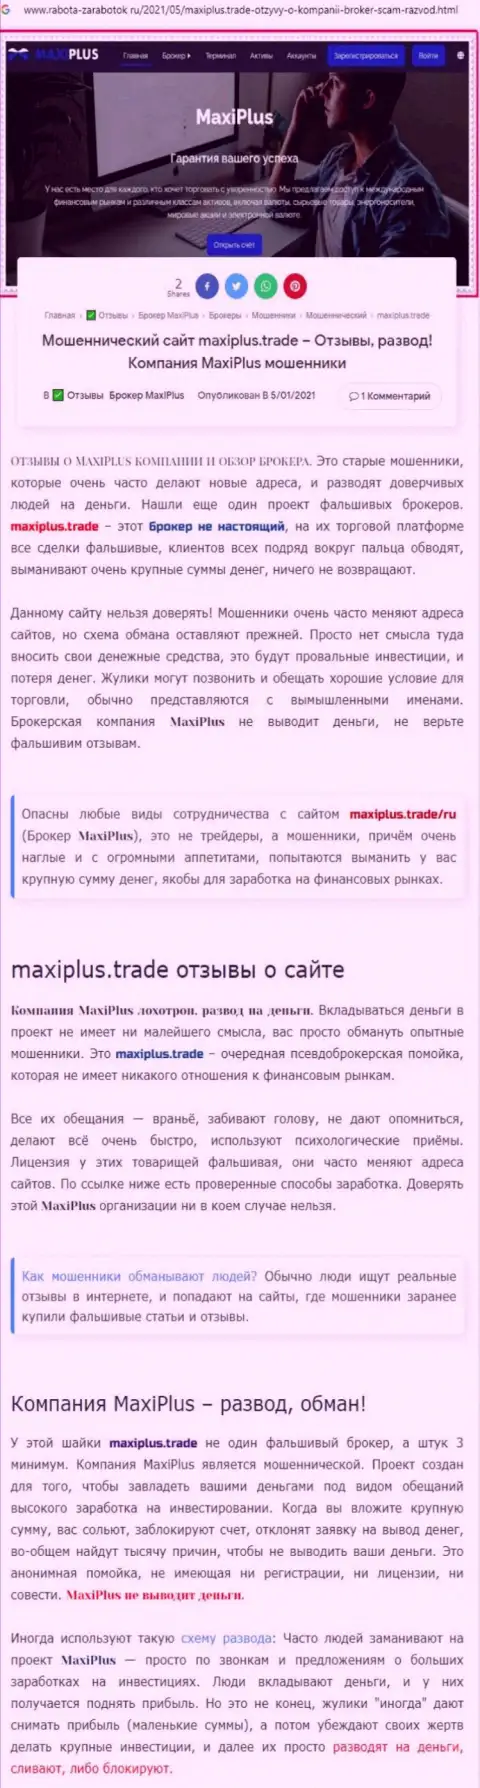 Maxi Plus - это МОШЕННИКИ !!! Принципы деятельности ЛОХОТРОНА (обзор неправомерных деяний)